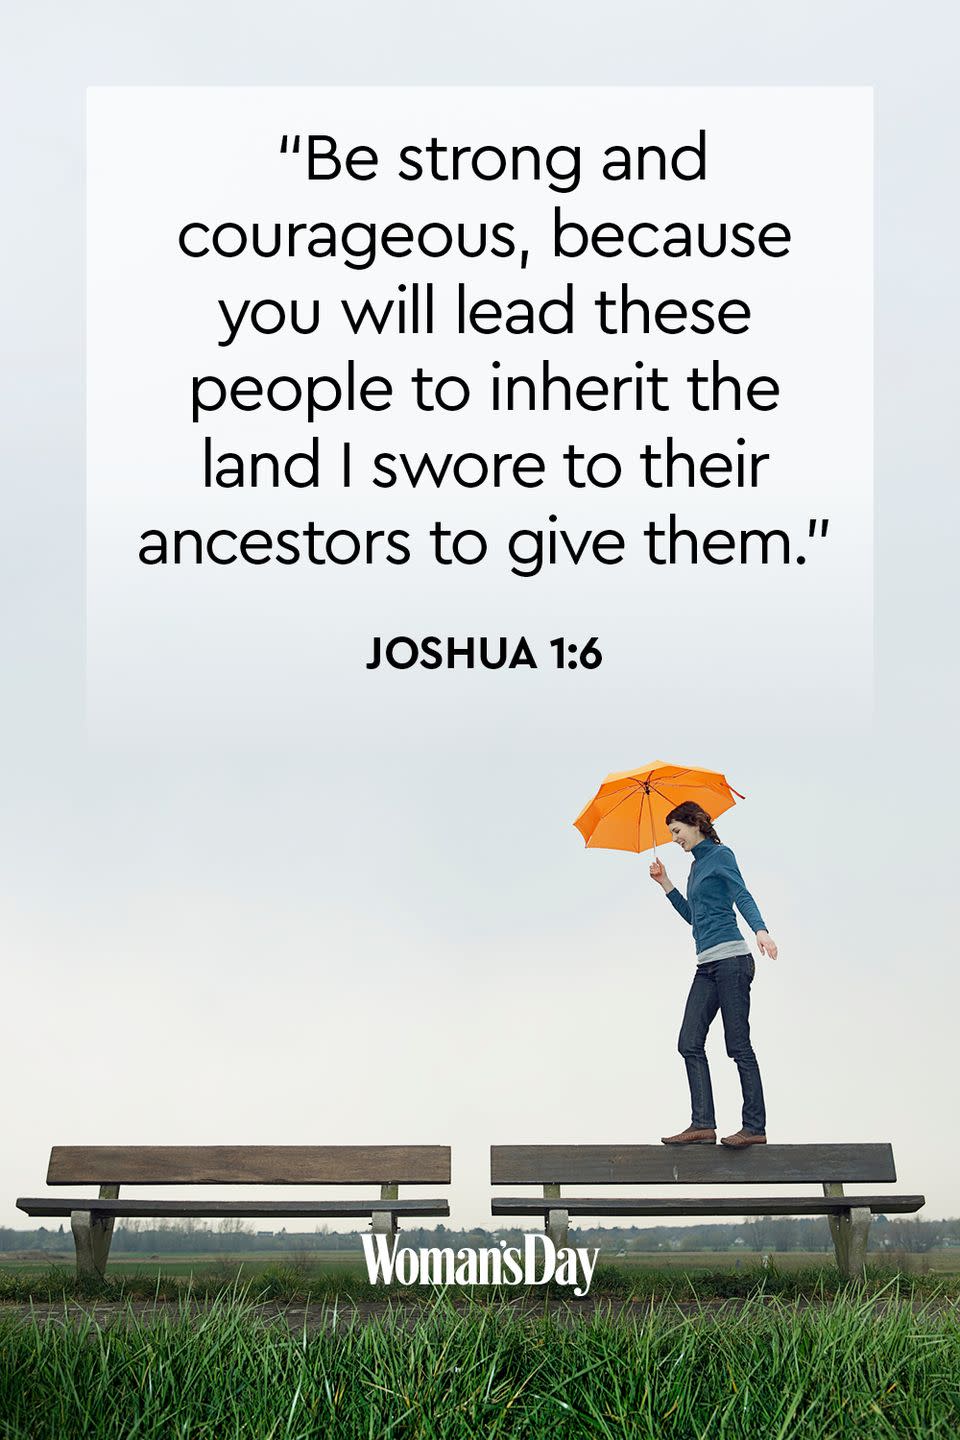 Joshua 1:6